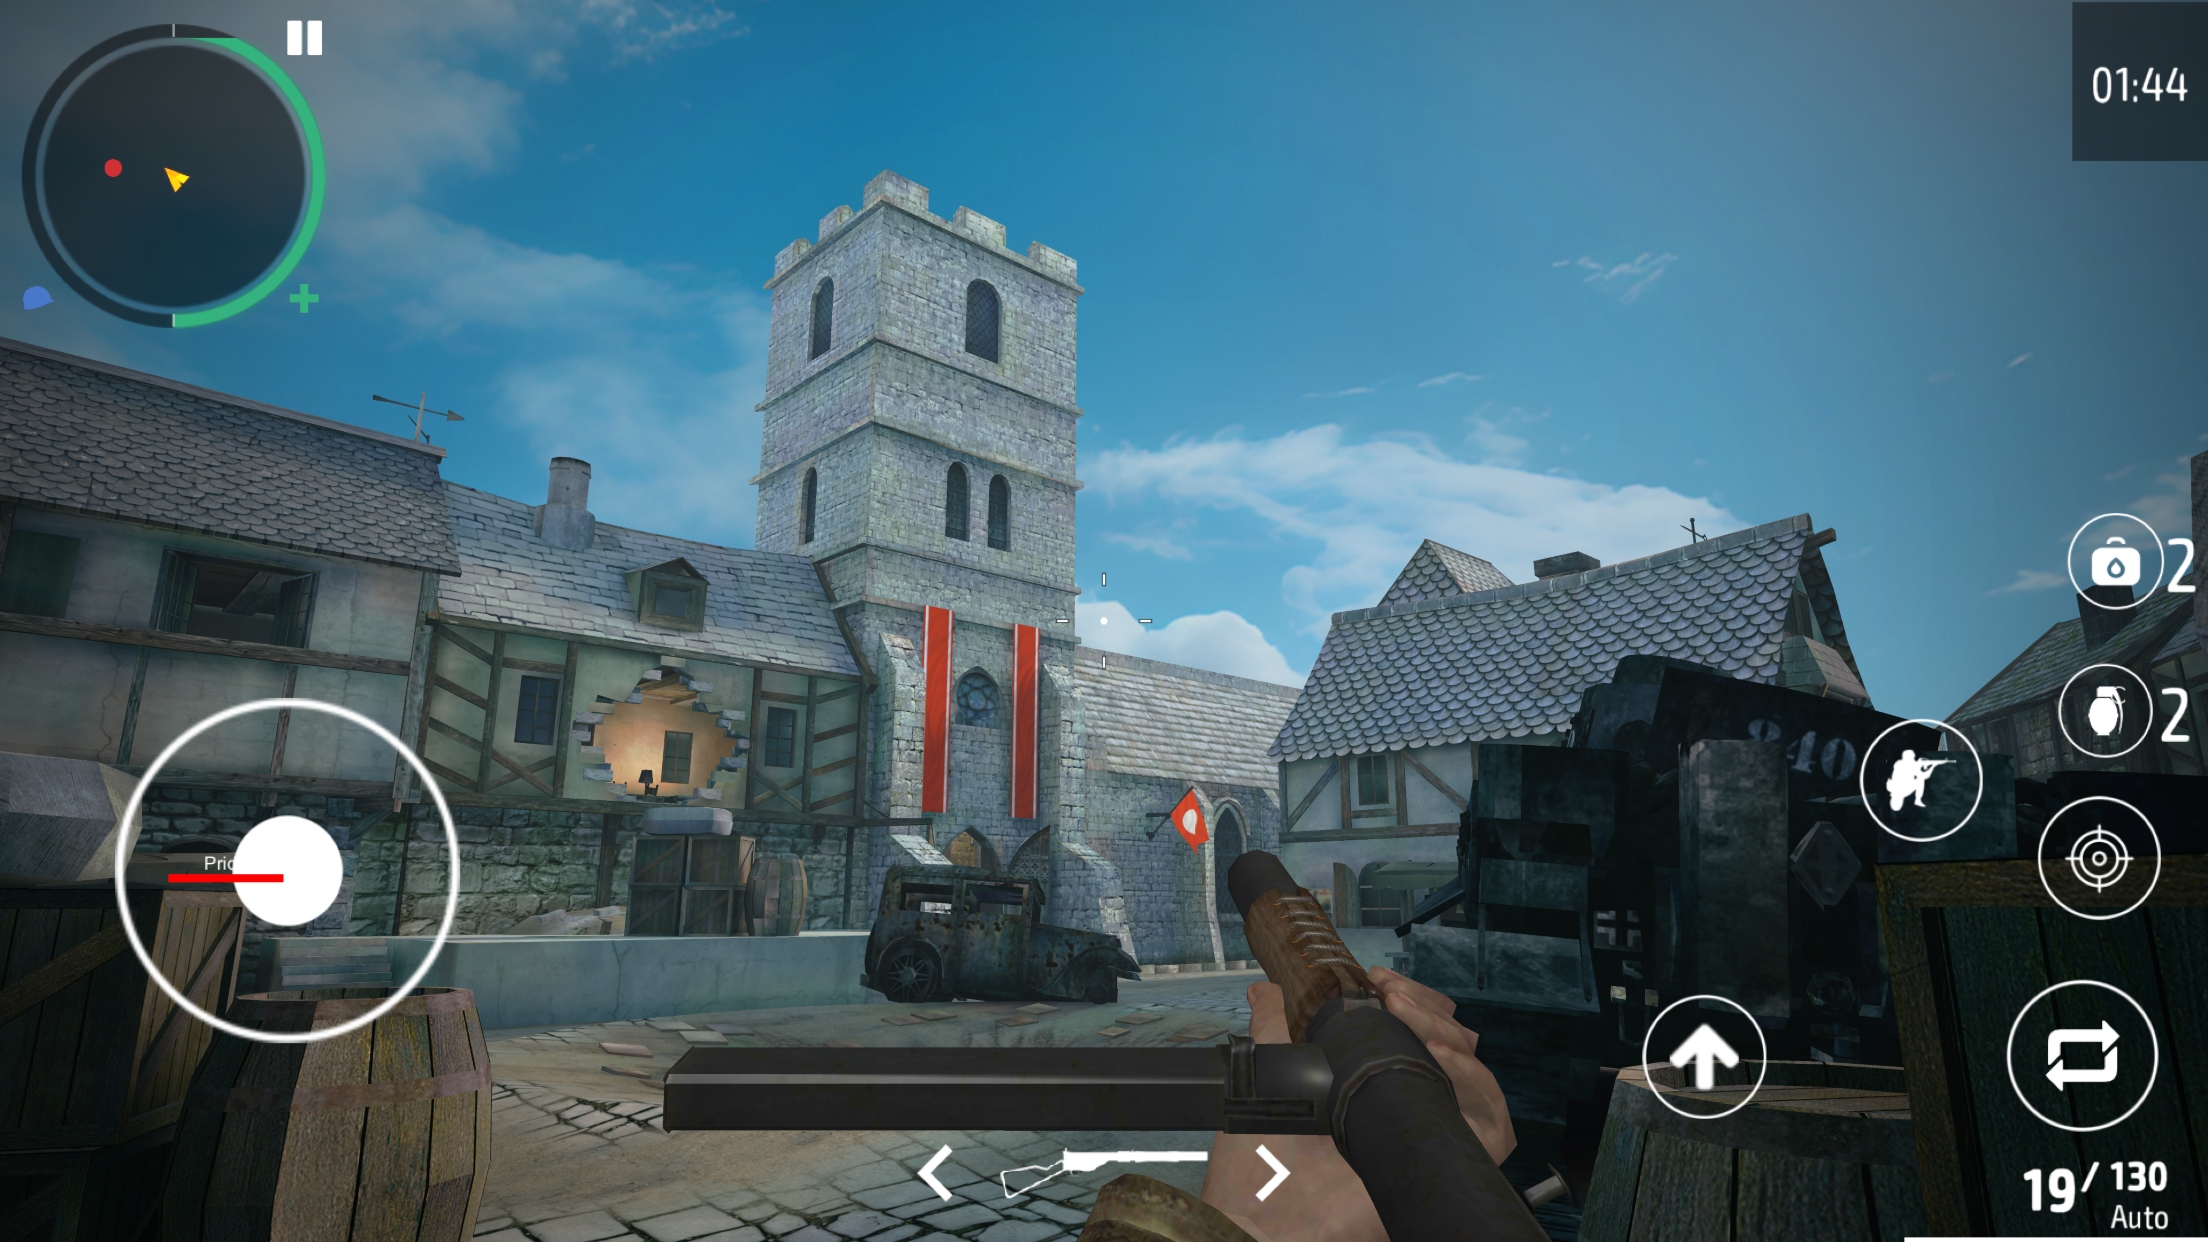 Download & Play World War 2 Shooter - offline on PC & Mac (Emulator)